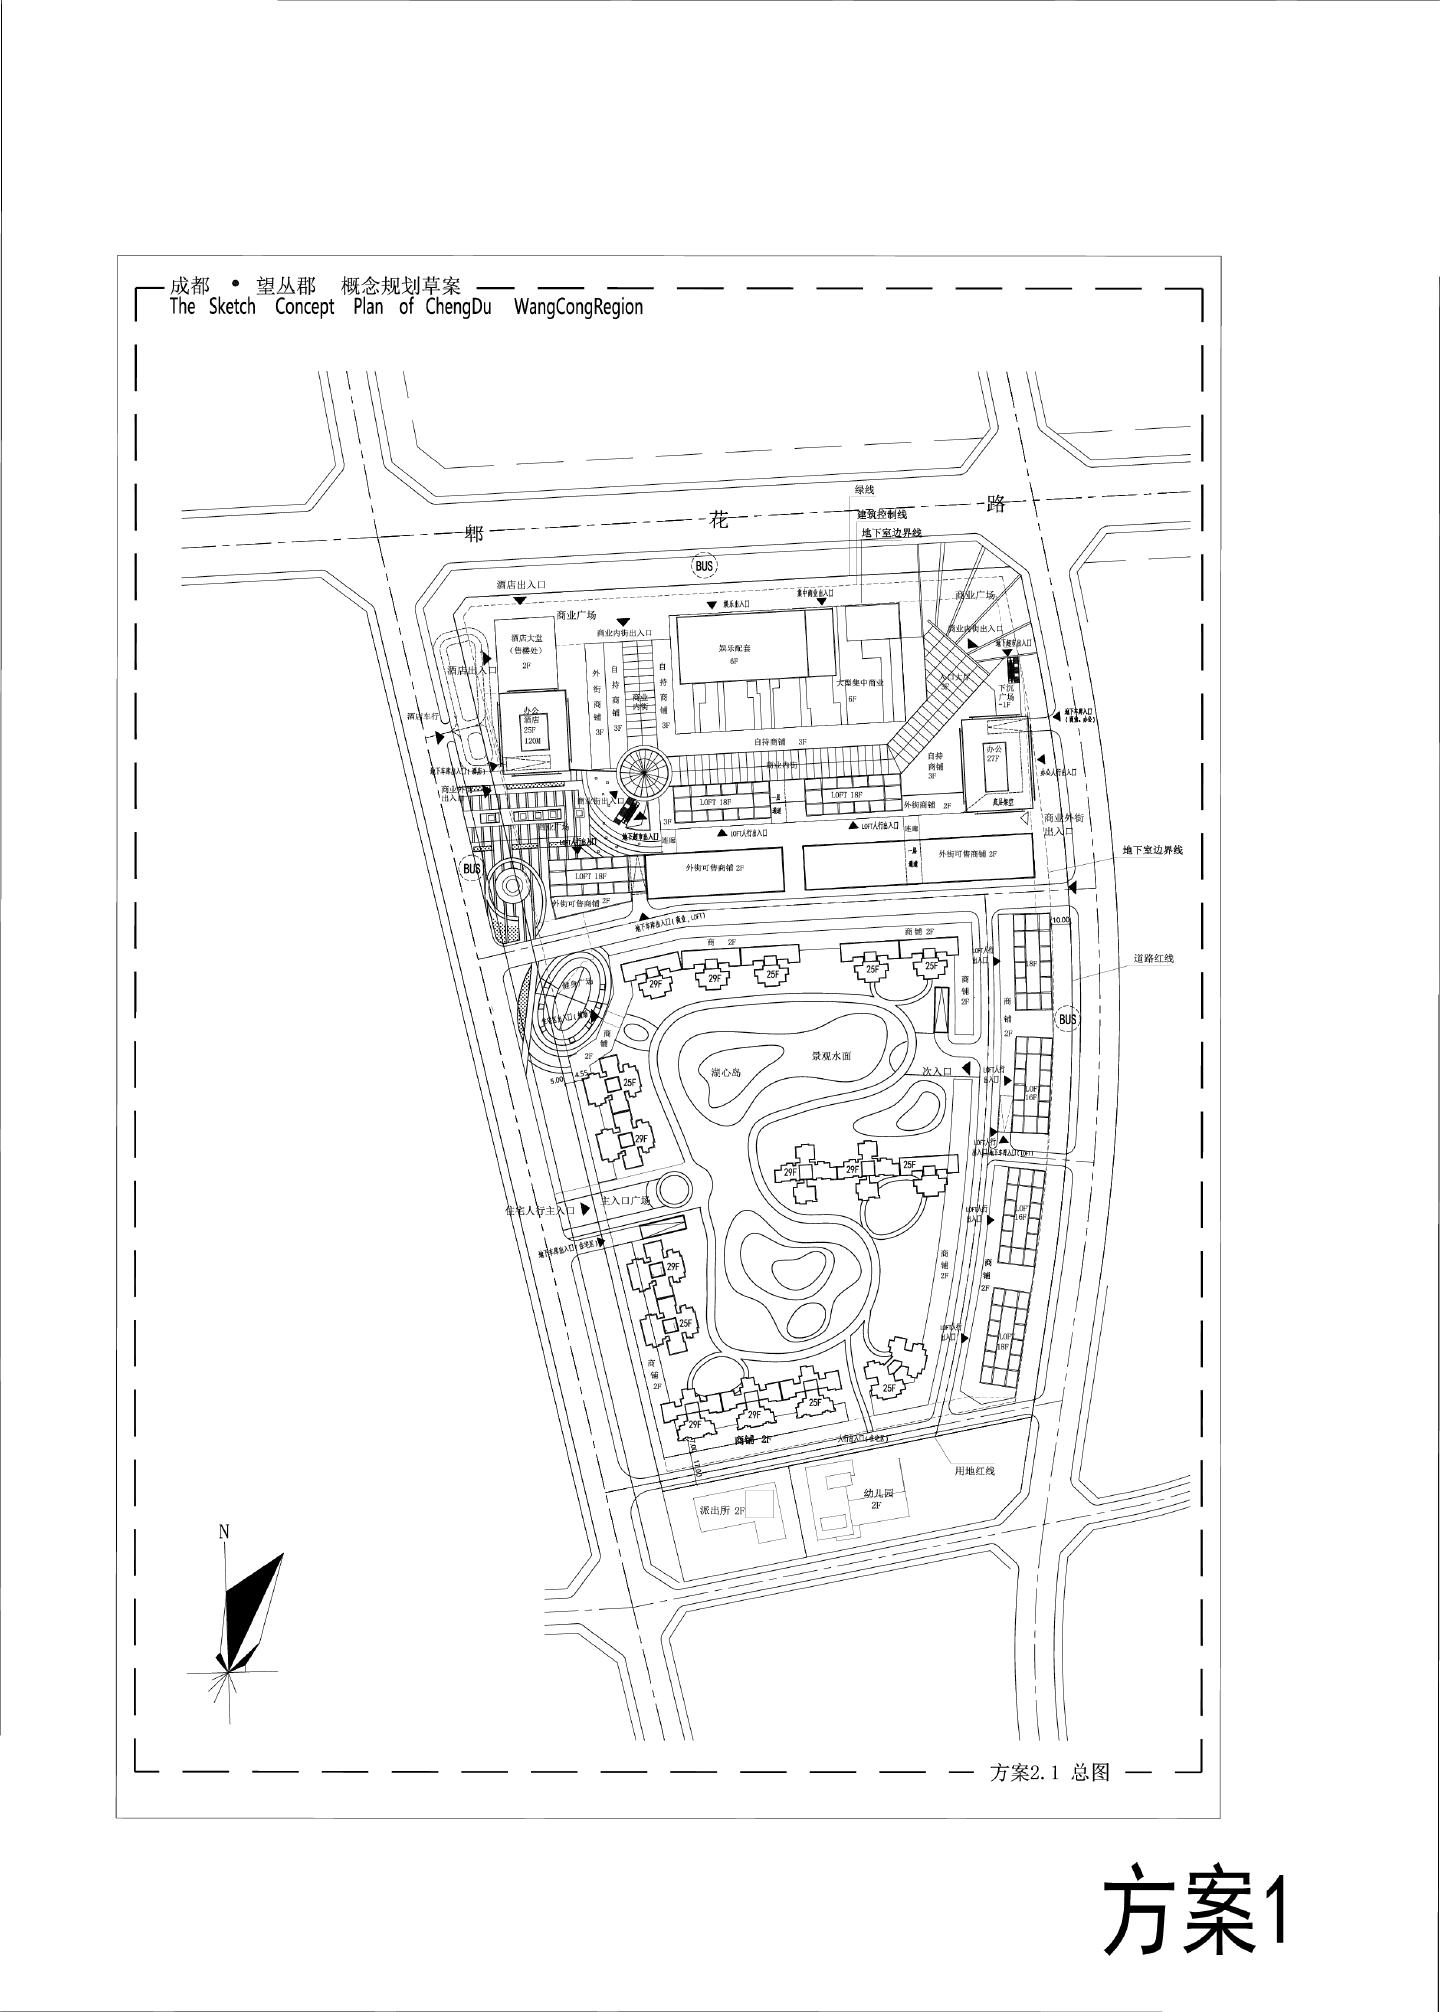 成都·望丛郡概念规划草案0905 花样年方案总图CAD图.dwg